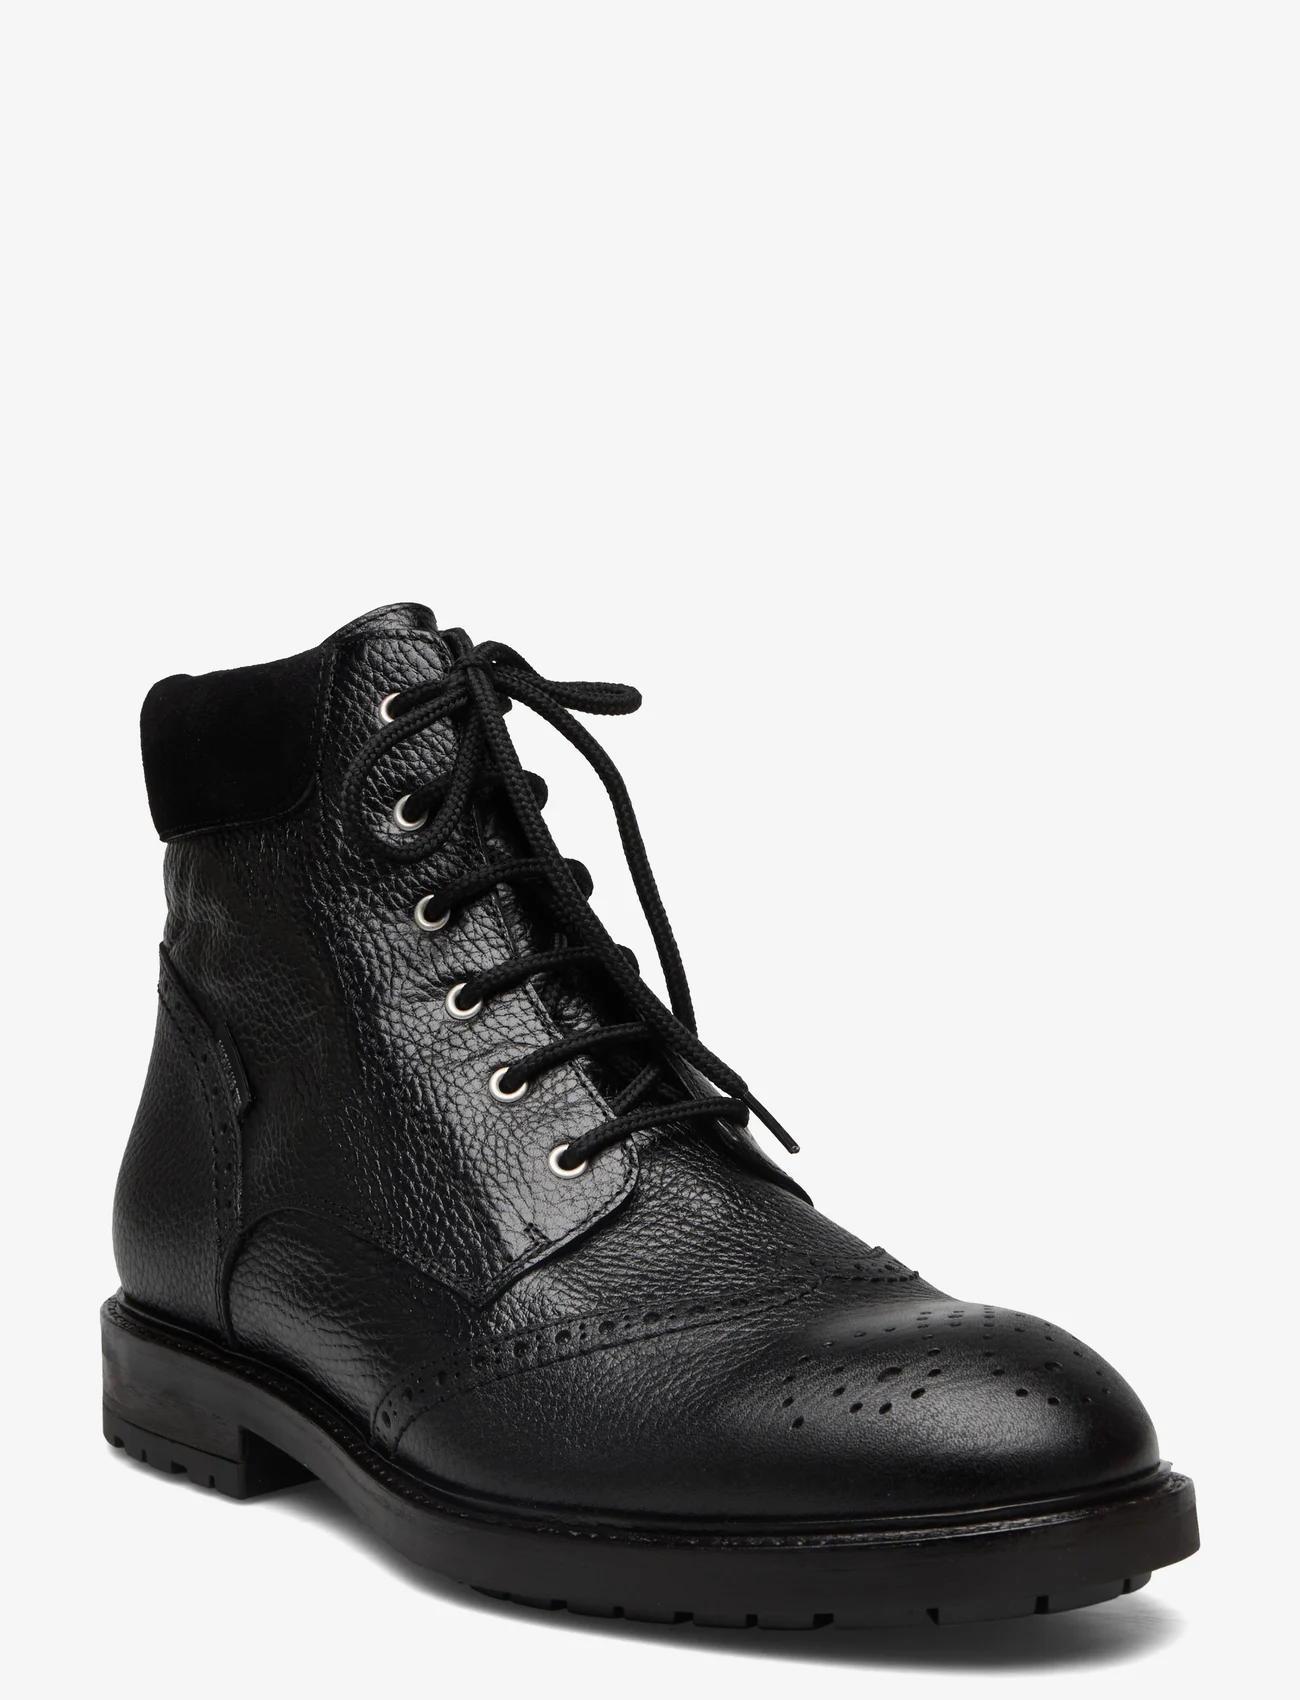 ANGULUS - Shoes - flat - with lace - støvler med snøre - 2504/1163 black/black - 0